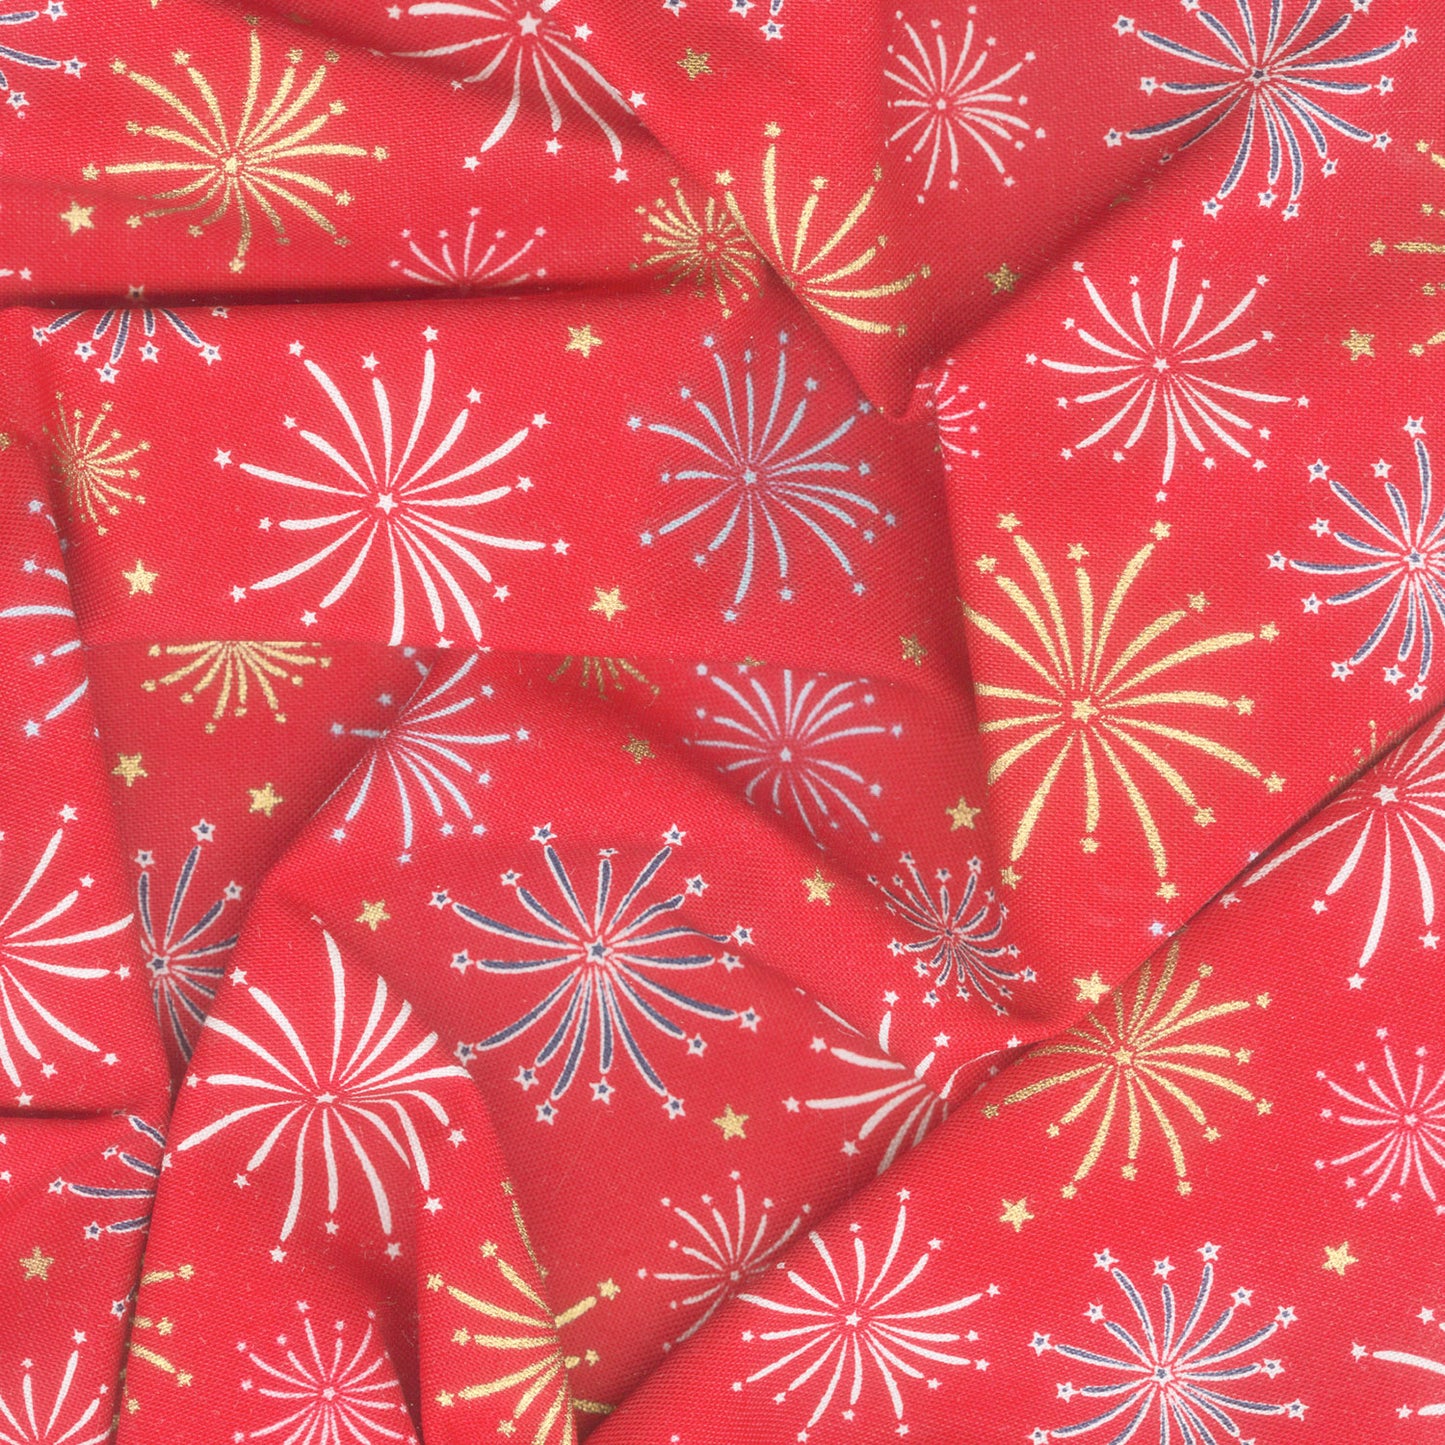 Sweet Freedom - Fireworks Red Sparkle Yardage Alternative View #1